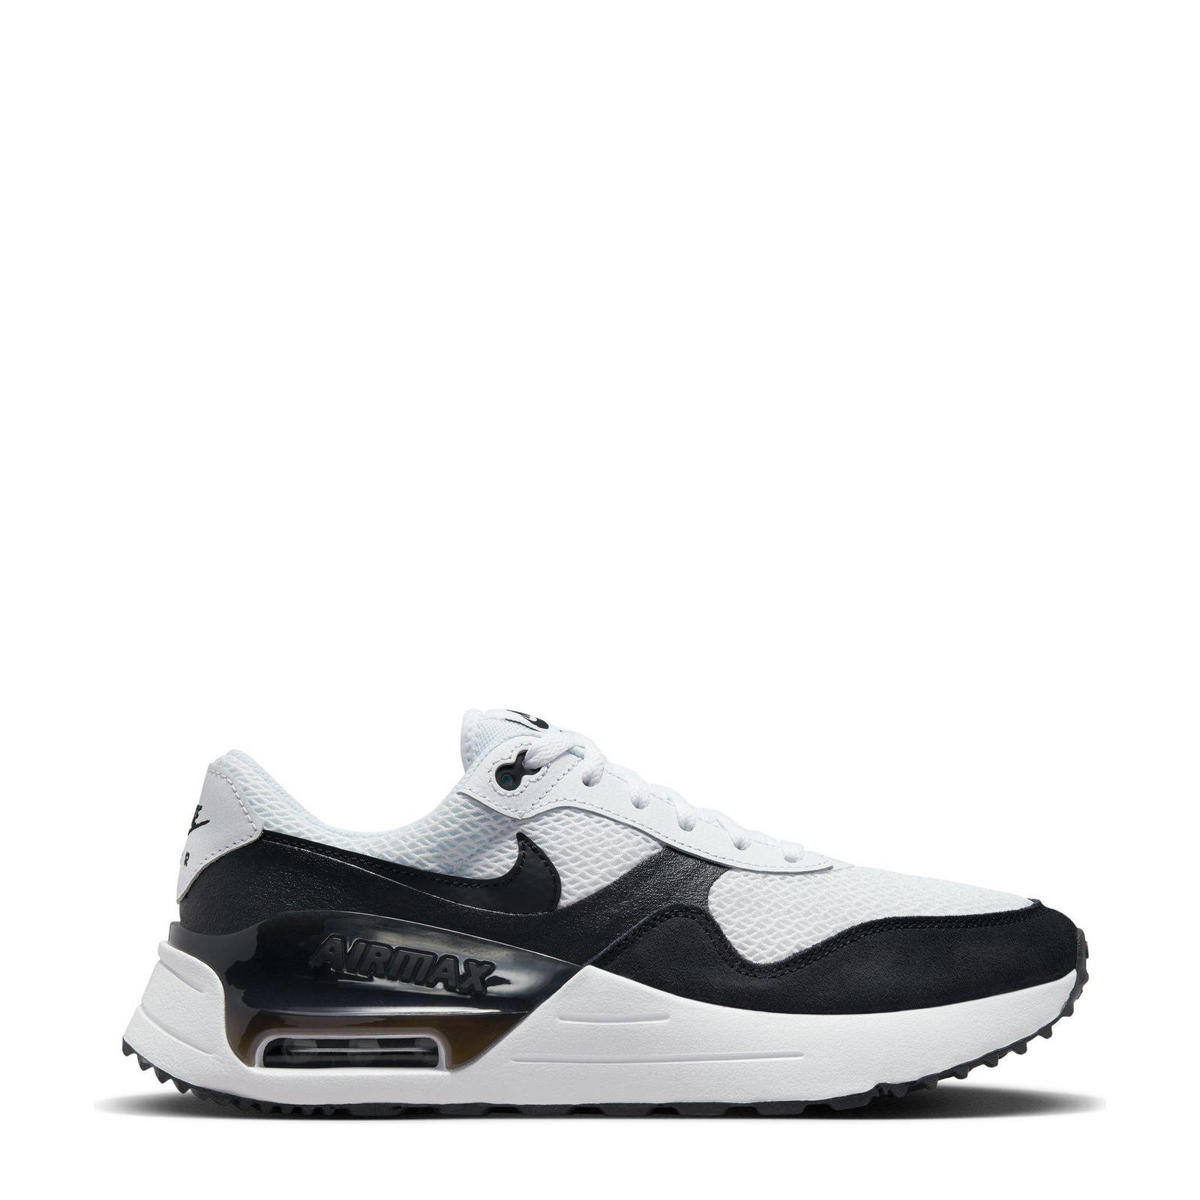 Niet doen Blaast op Dubbelzinnigheid Nike Air Max Systm sneakers wit/zwart | wehkamp